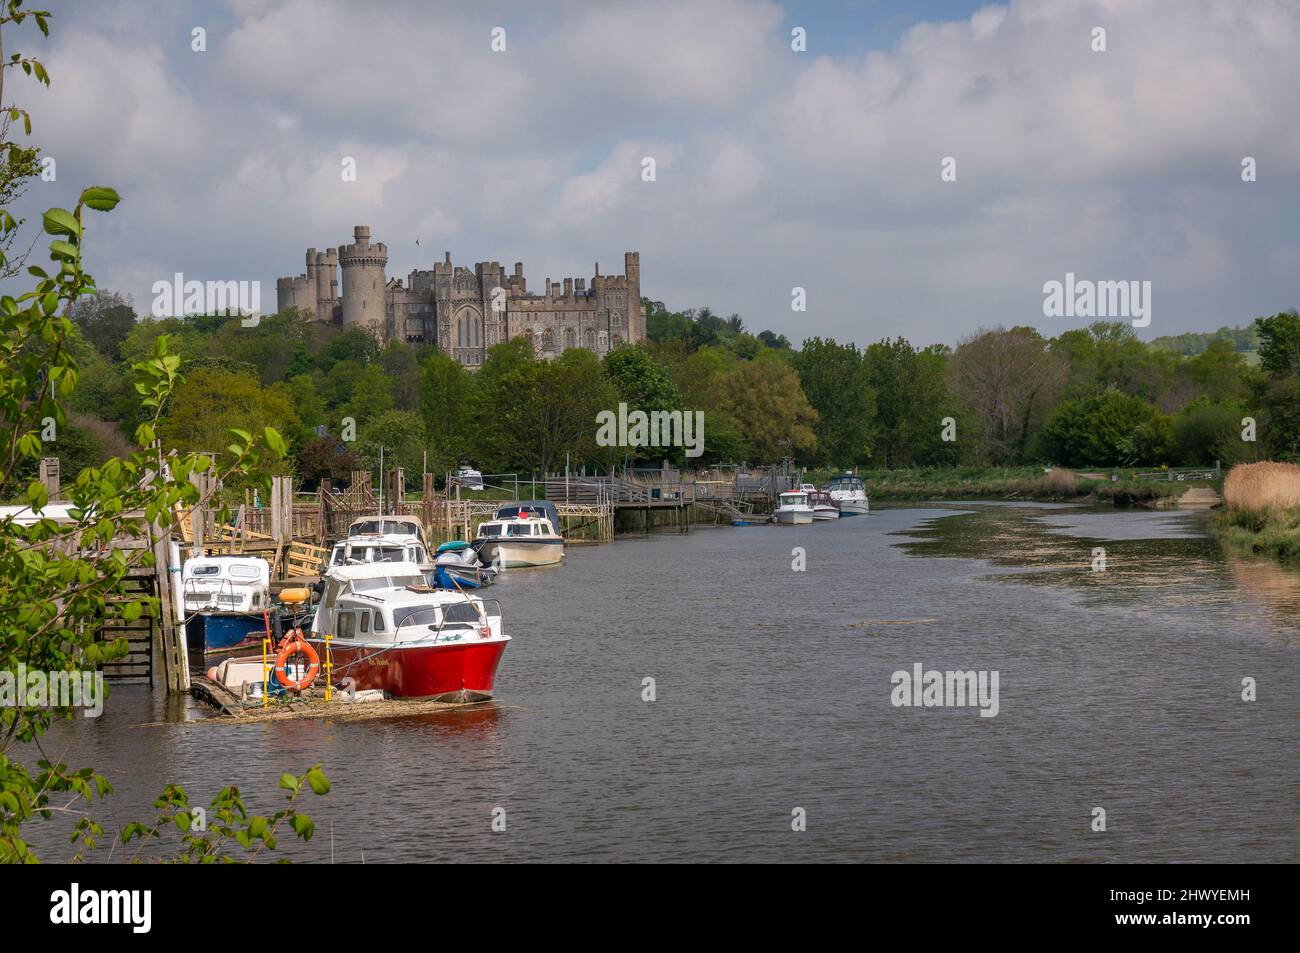 Bateaux sur la rivière Arun avec le château d'Arundel en arrière-plan, West Sussex, Royaume-Uni Banque D'Images